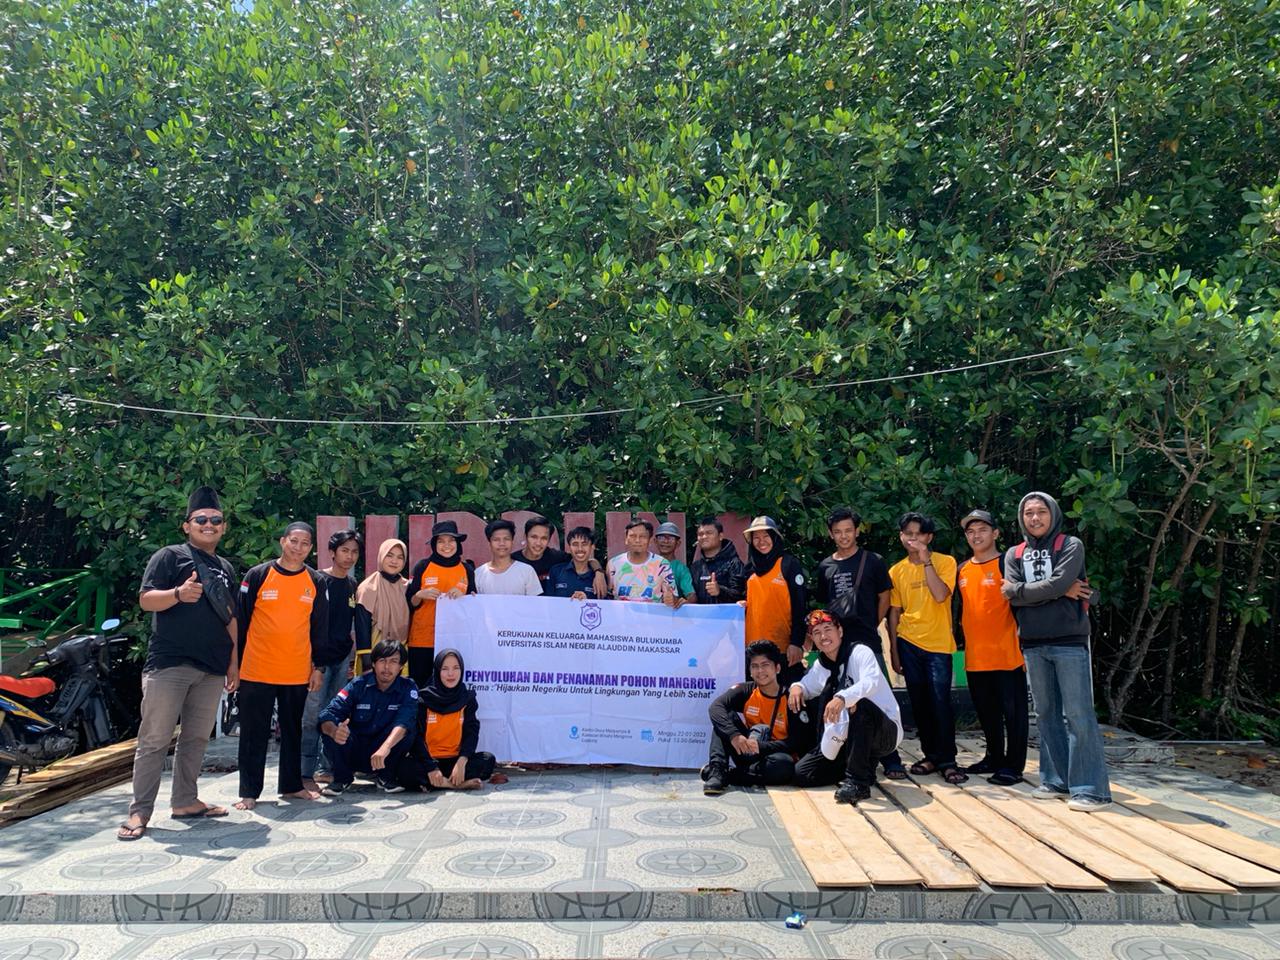 Gambar Gelar Penyuluhan dan Penanaman Mangrove, KKMB UIN Makassar dapat Apresiasi BAZNAS Bulukumba